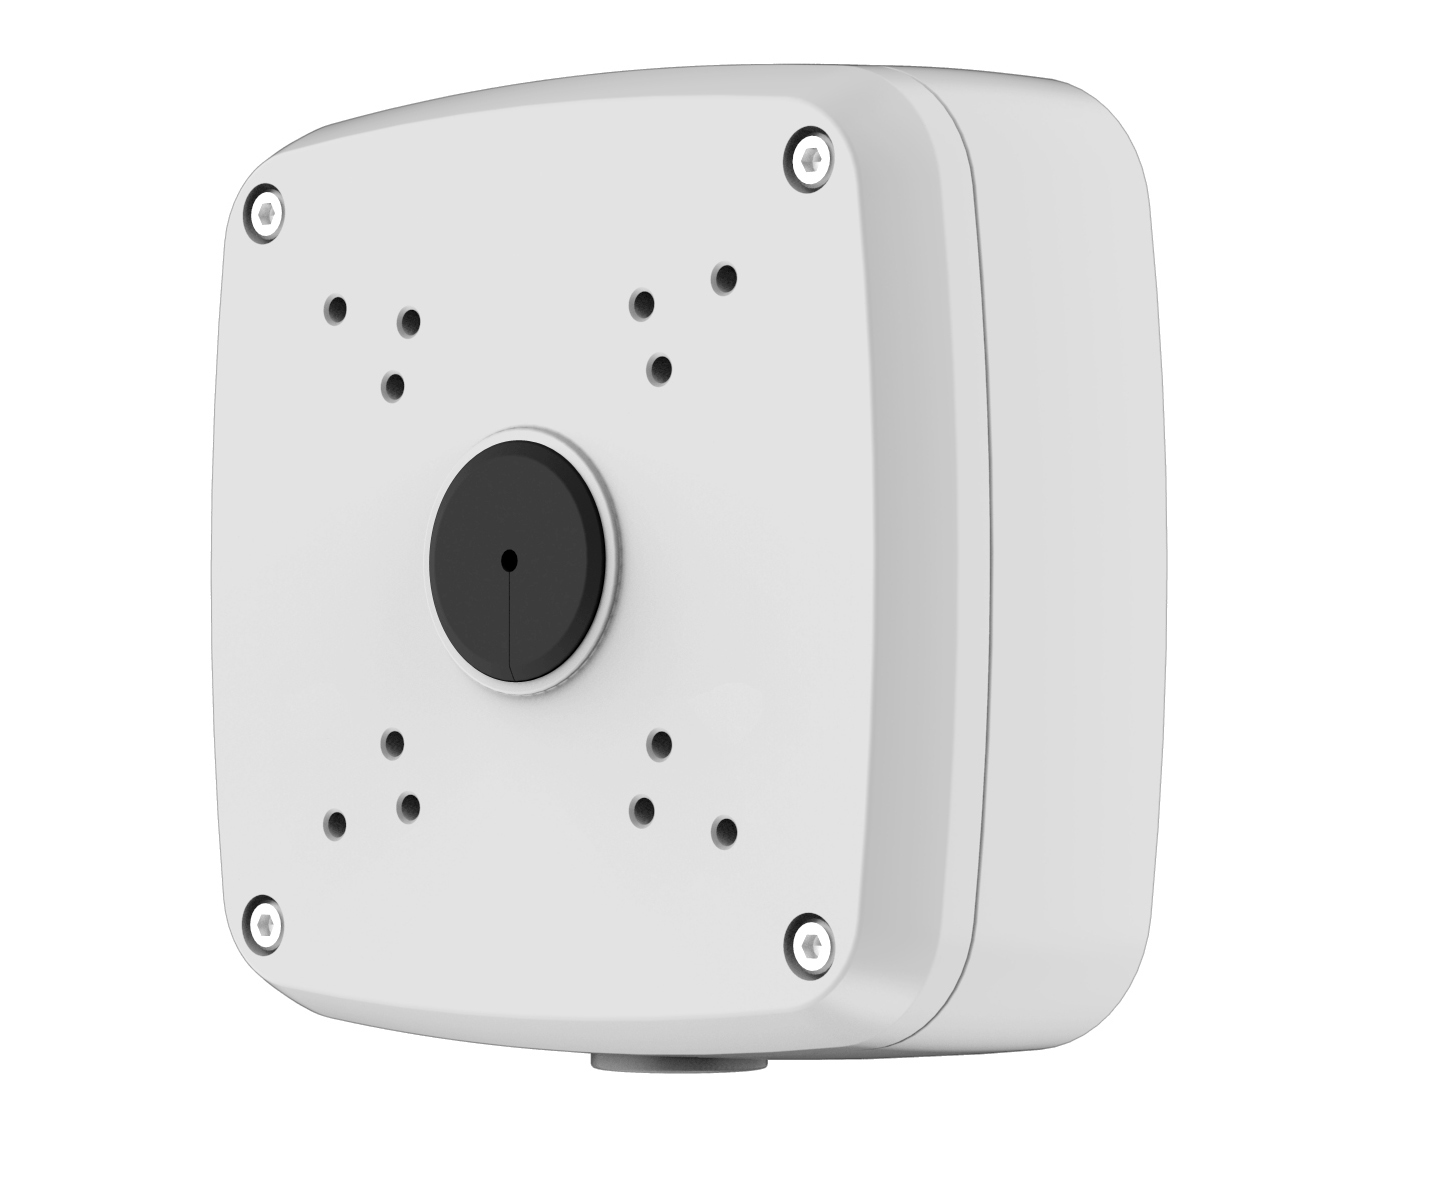 Dahua PFA121-V2 baza kamere - Vodootporna nazidna dozna za sakrivanje kablova i konektora prilikom instalacije kamera